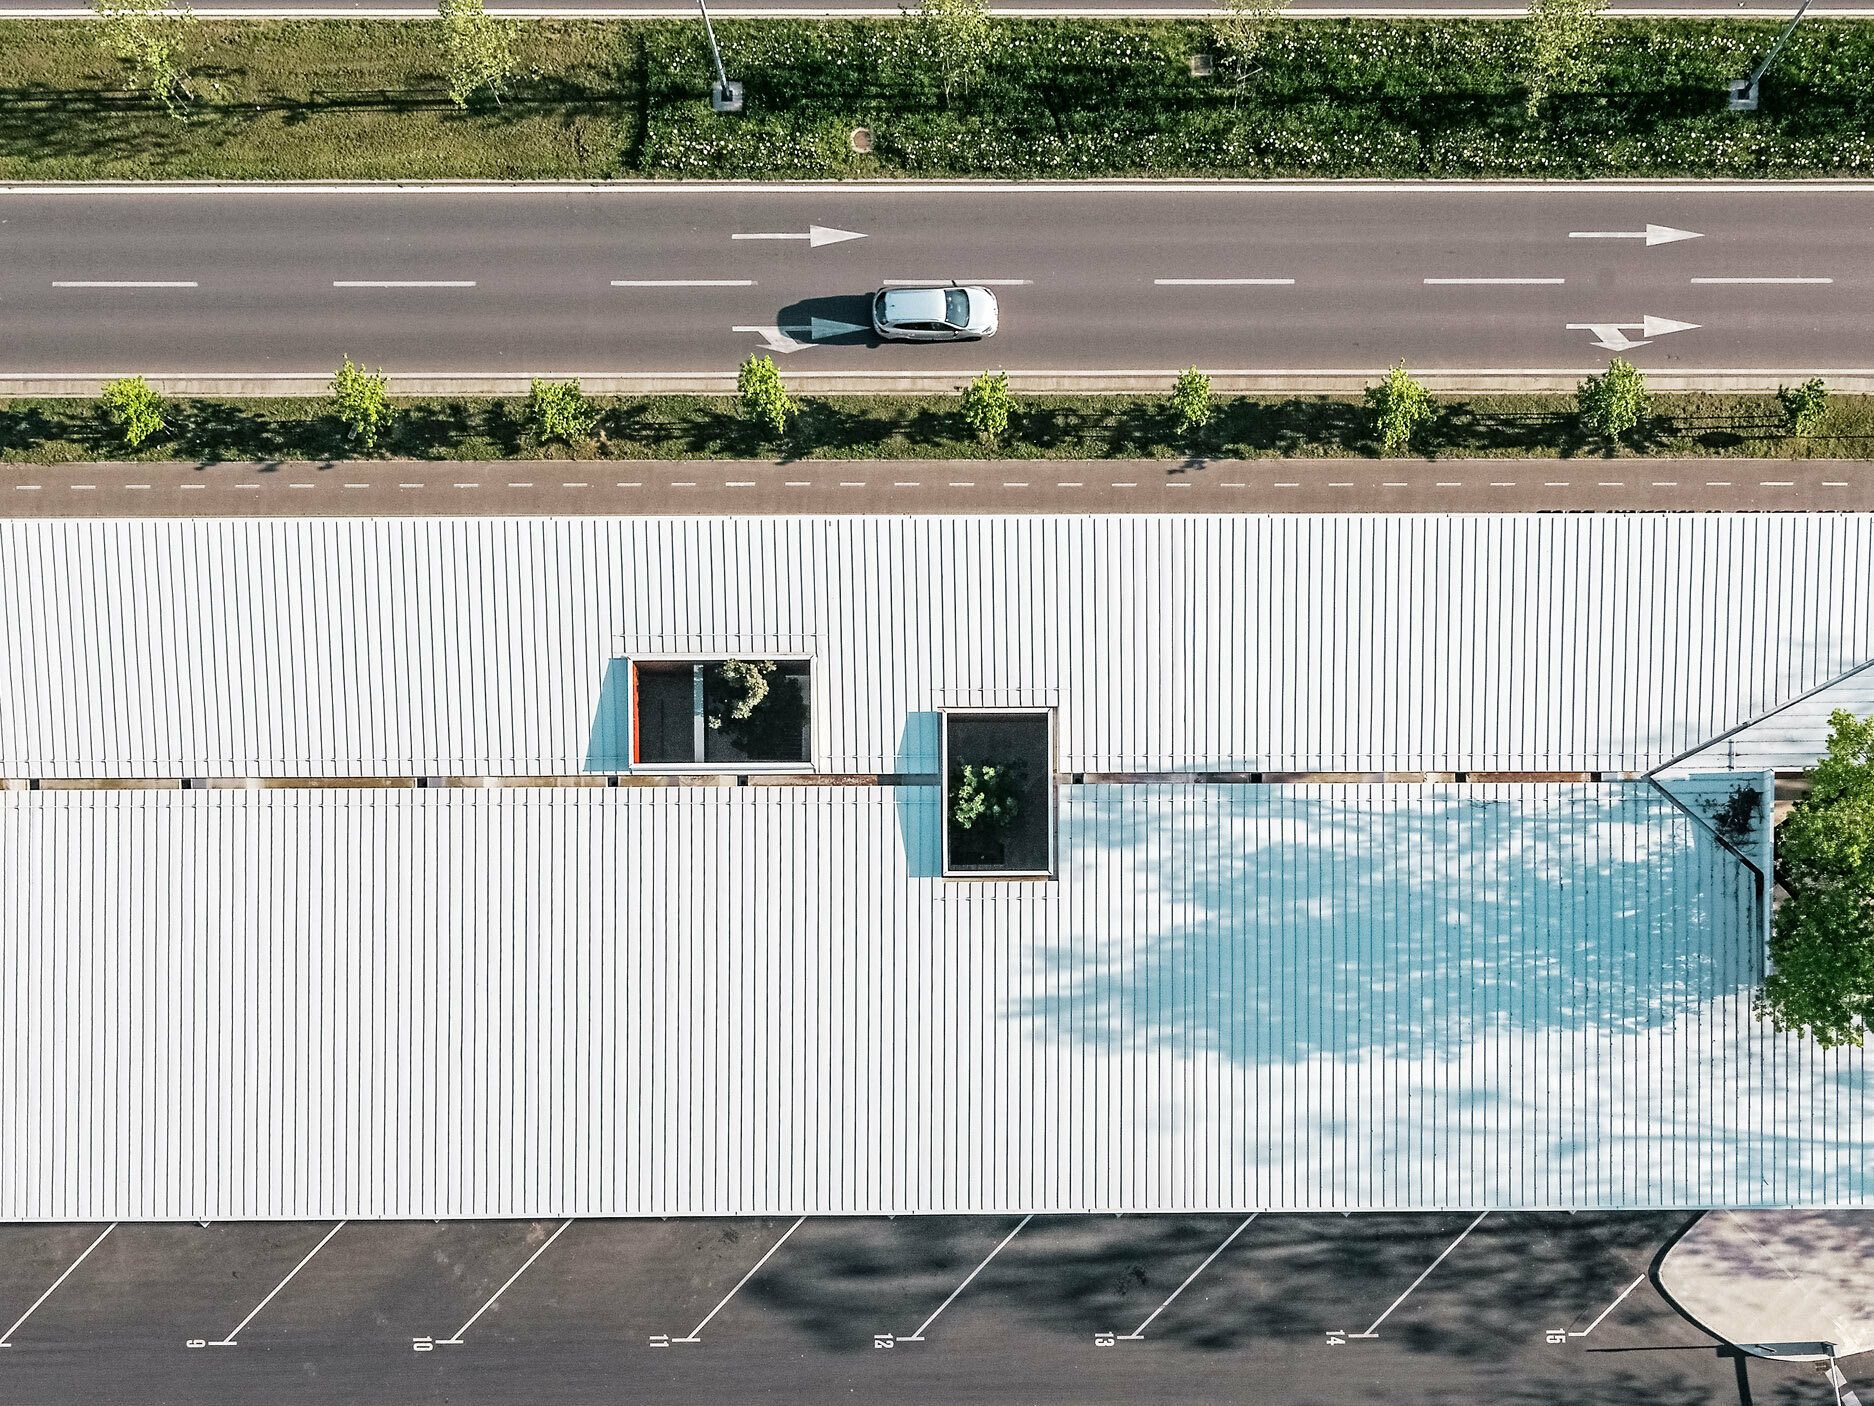 Das Bild zeigt eine Luftaufnahme der Bushaltestelle in Kroatien mit einem weißen Prefalz Dach von PREFA. Das lange Gebäude hat mehrere rechteckige Dachfenster, die in verschiedenen Positionen angeordnet sind und das grüne Laub von Bäumen durchscheinen lassen. Ein kleinerer Parkplatz ist im Vordergrund zu sehen, während sich im Hintergrund eine zweispurige Straße mit einer Linie von Bäumen entlangzieht. 